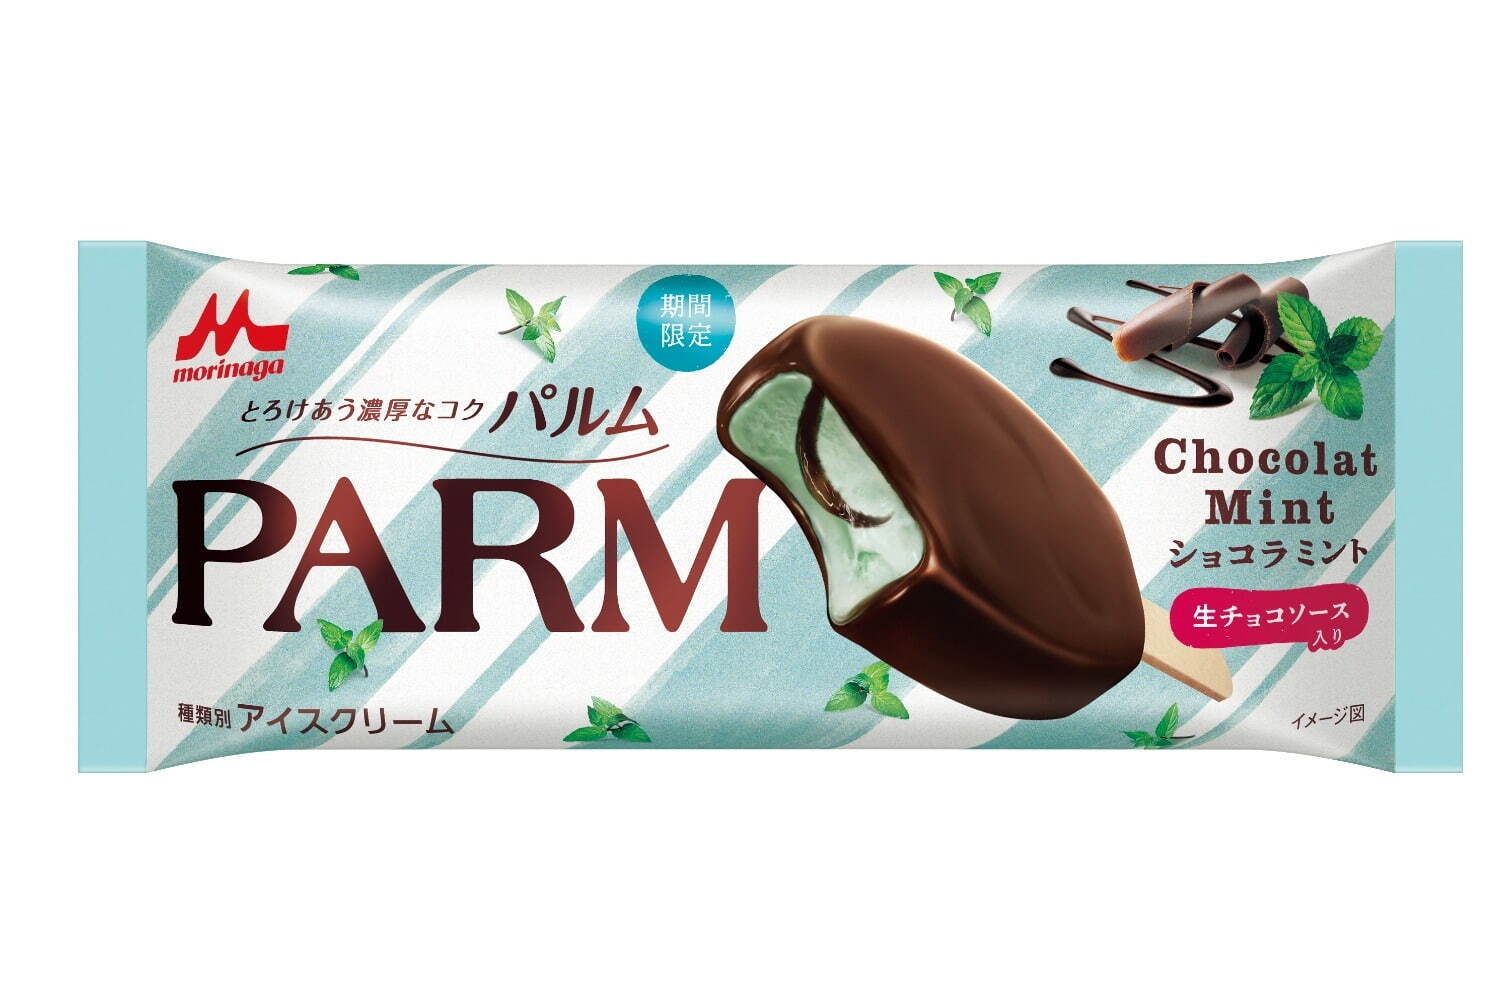 「パルム」史上初“チョコミント”アイス、爽やかミントアイス×ほろ苦チョコソース